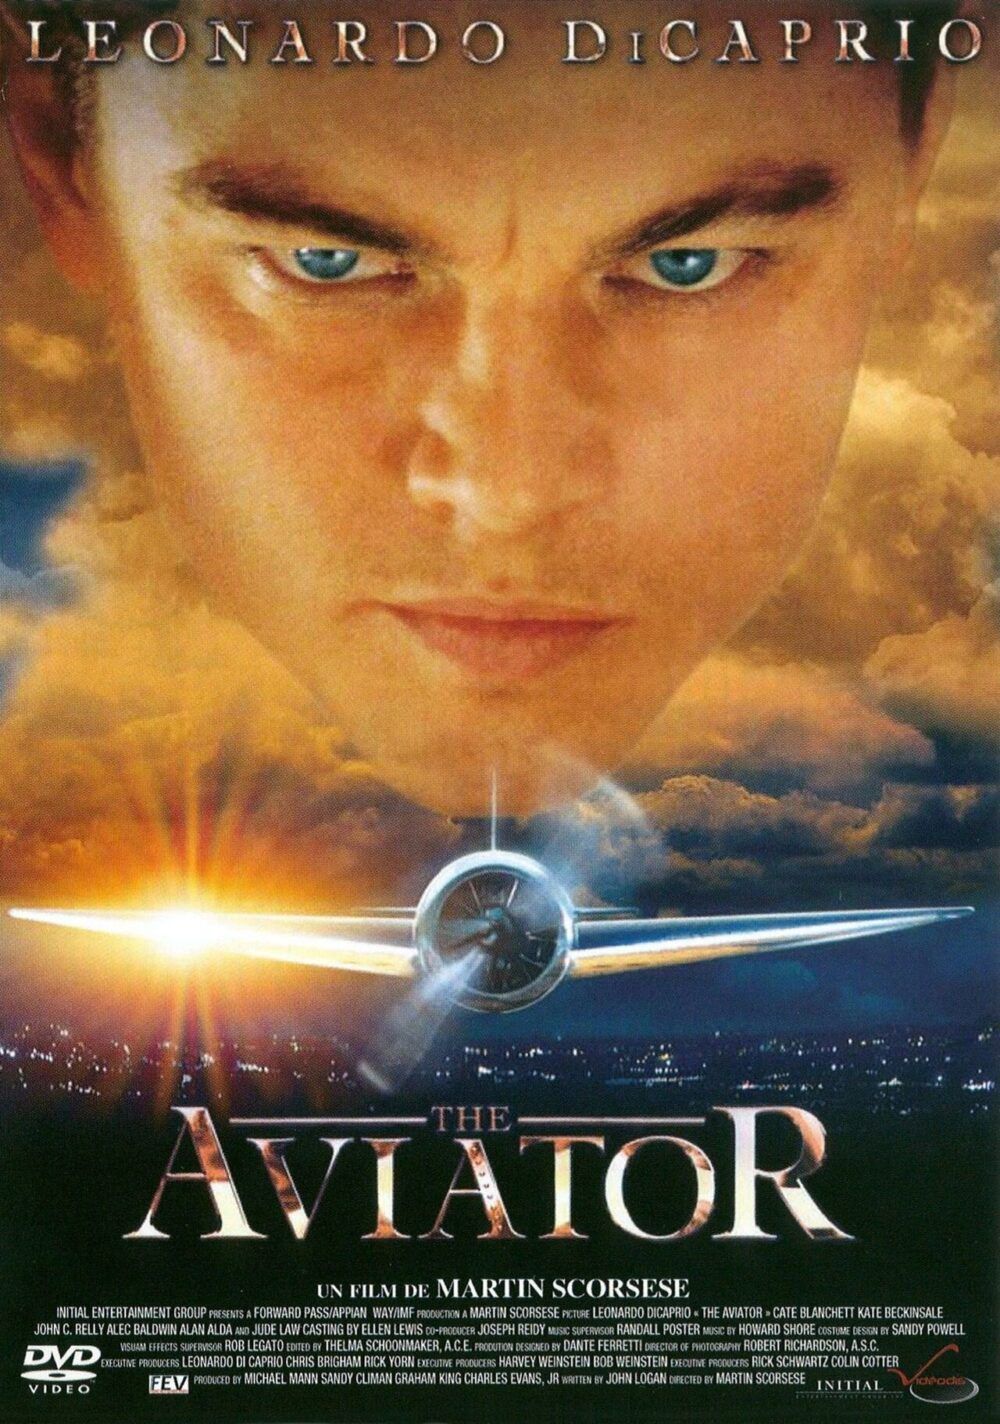 leo the aviator e1584241007220 - Sự nghiệp của nam tài tử Hollywood Leonardo DiCaprio